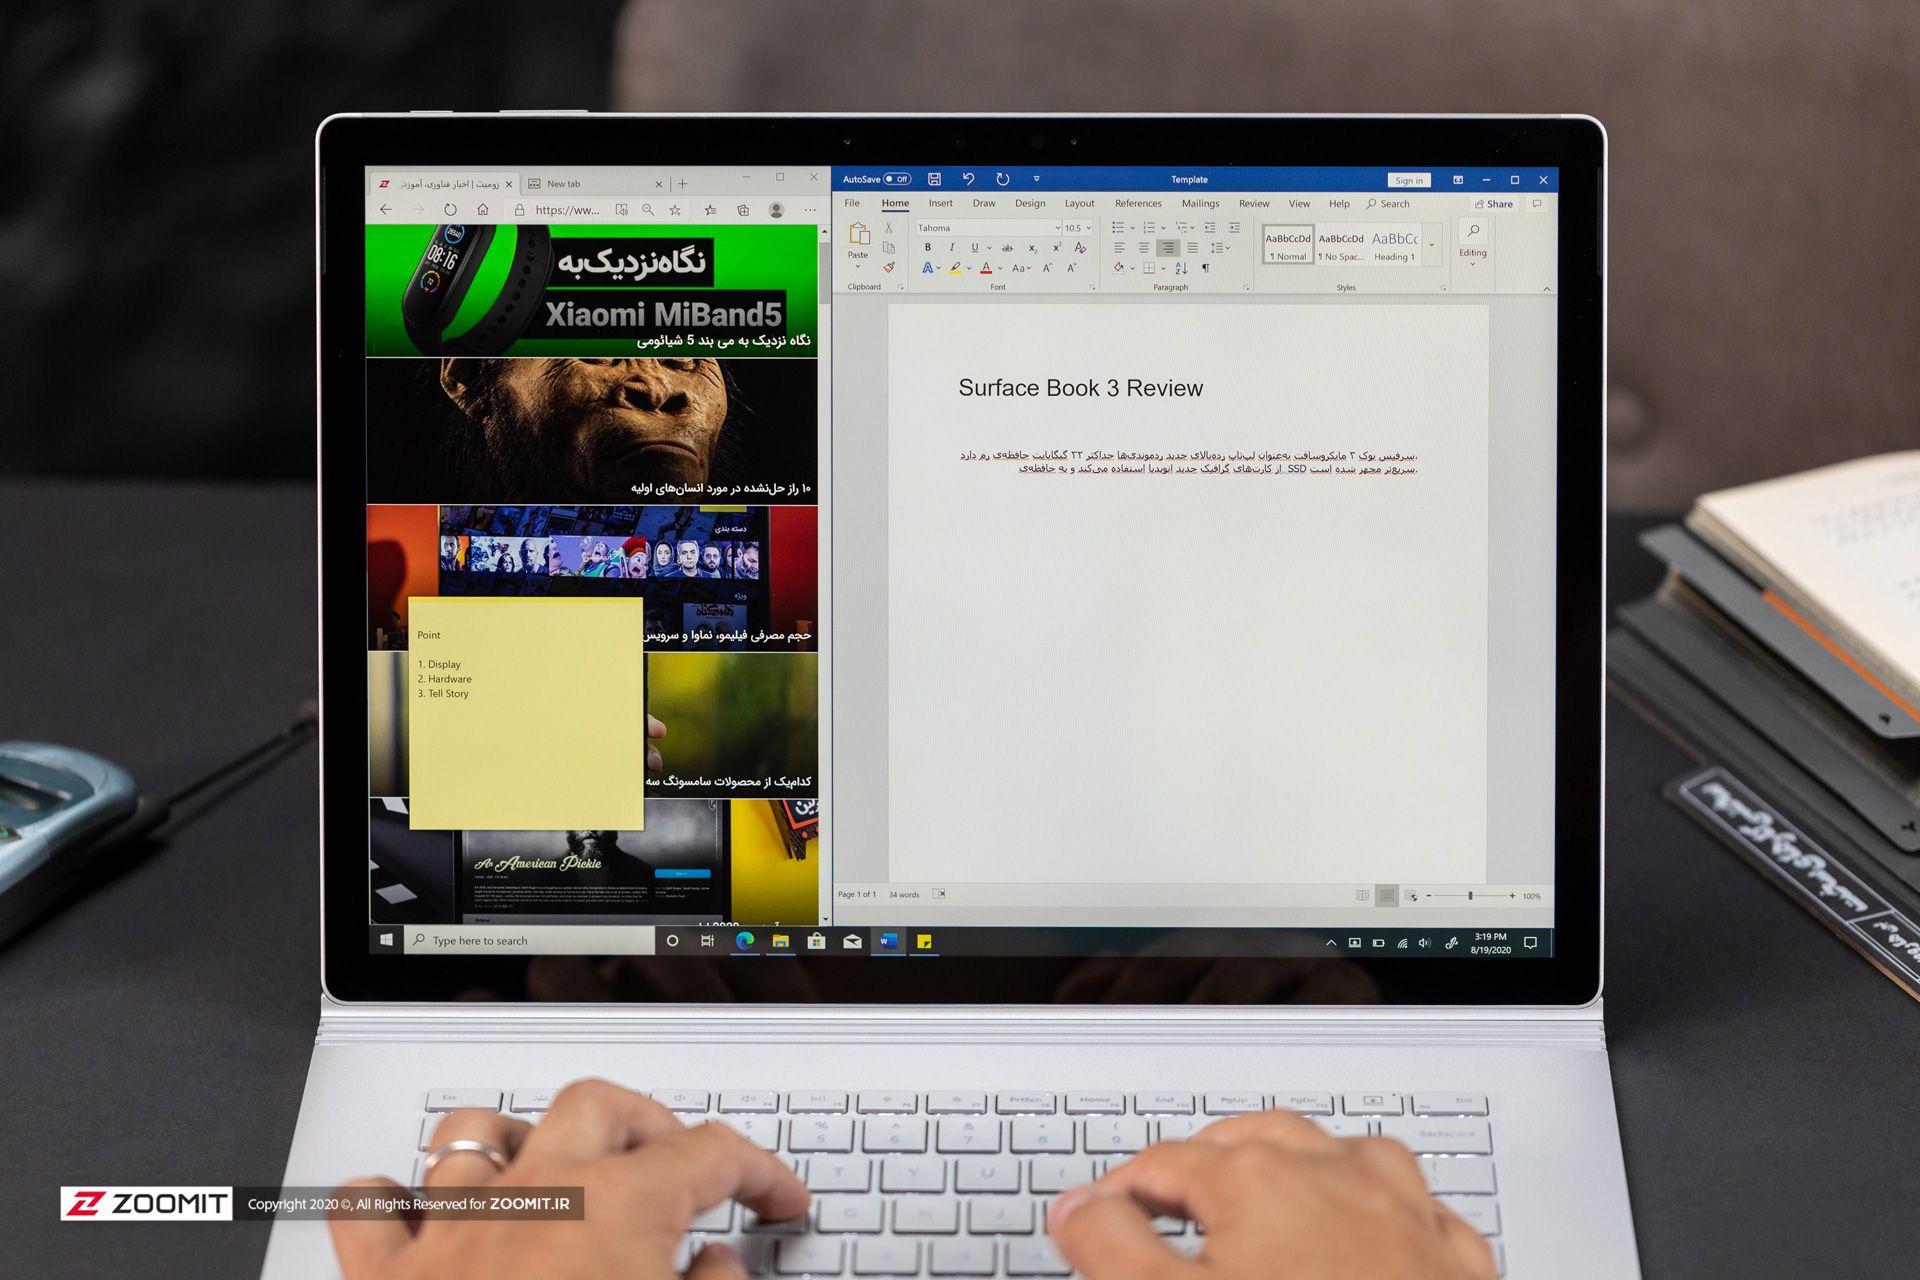 مرجع متخصصين ايران سرفيس بوك ۳ مايكروسافت / Microsoft Surface Book 3 در حال استفاده